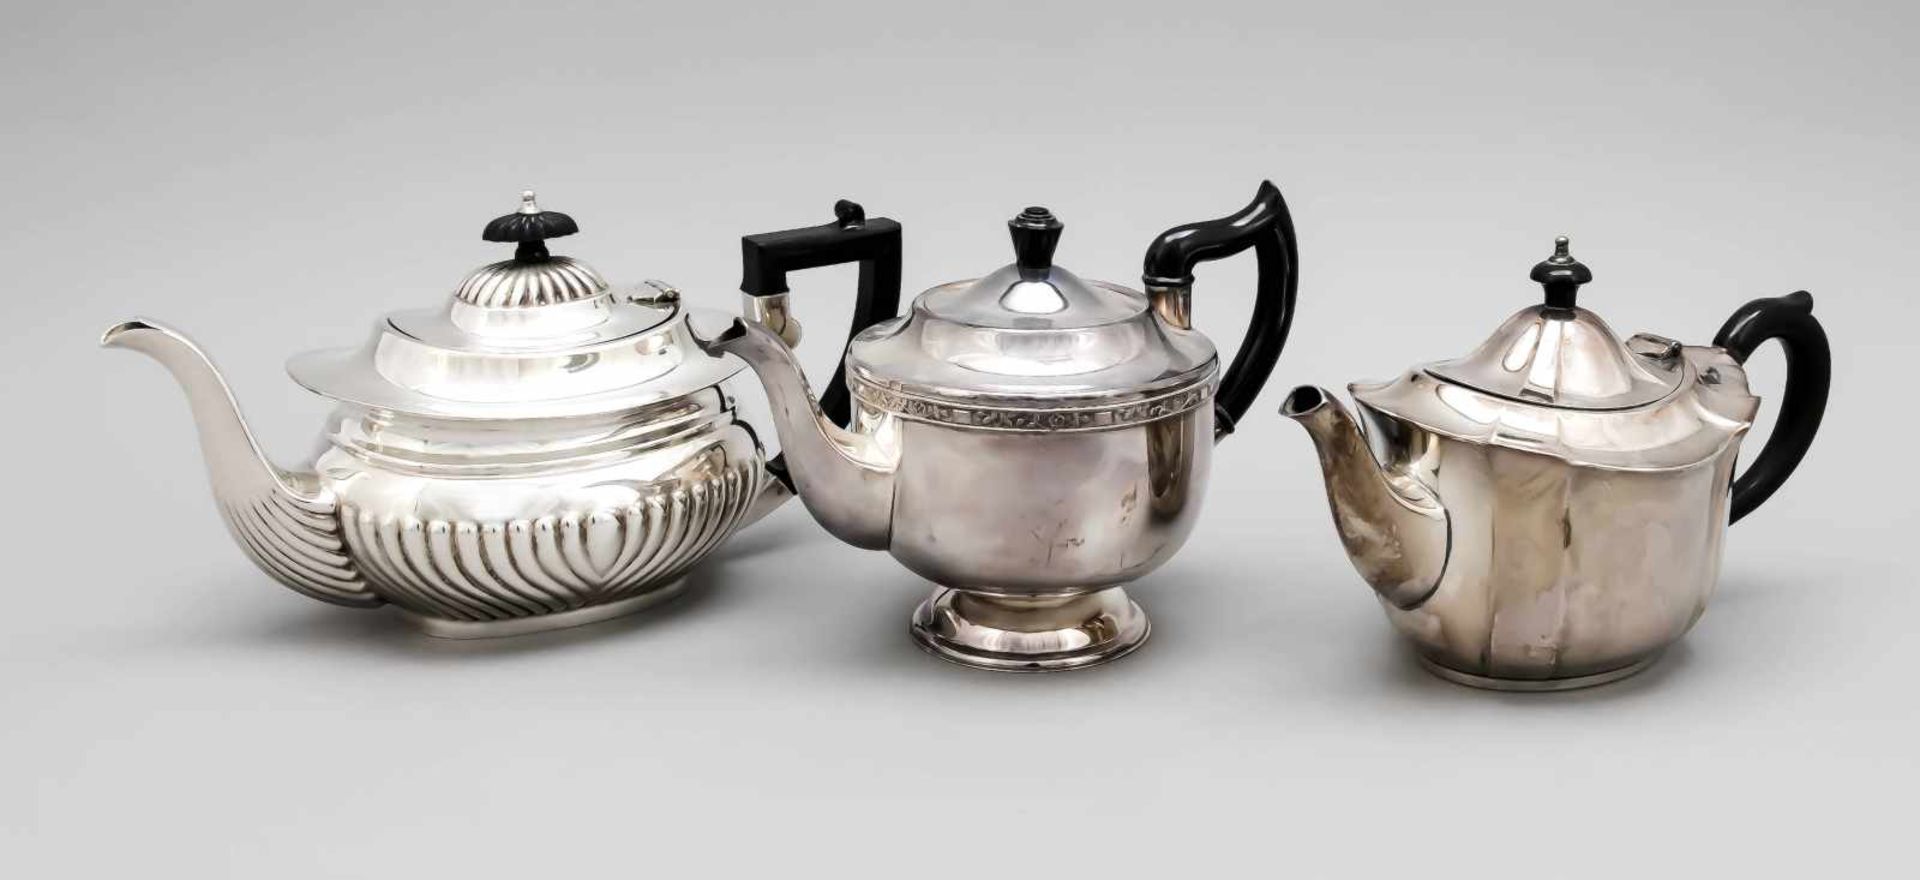 Konvolut von drei Teekannen, England, 20. Jh., plated, unterschiedliche Formen und Größen,jeweils